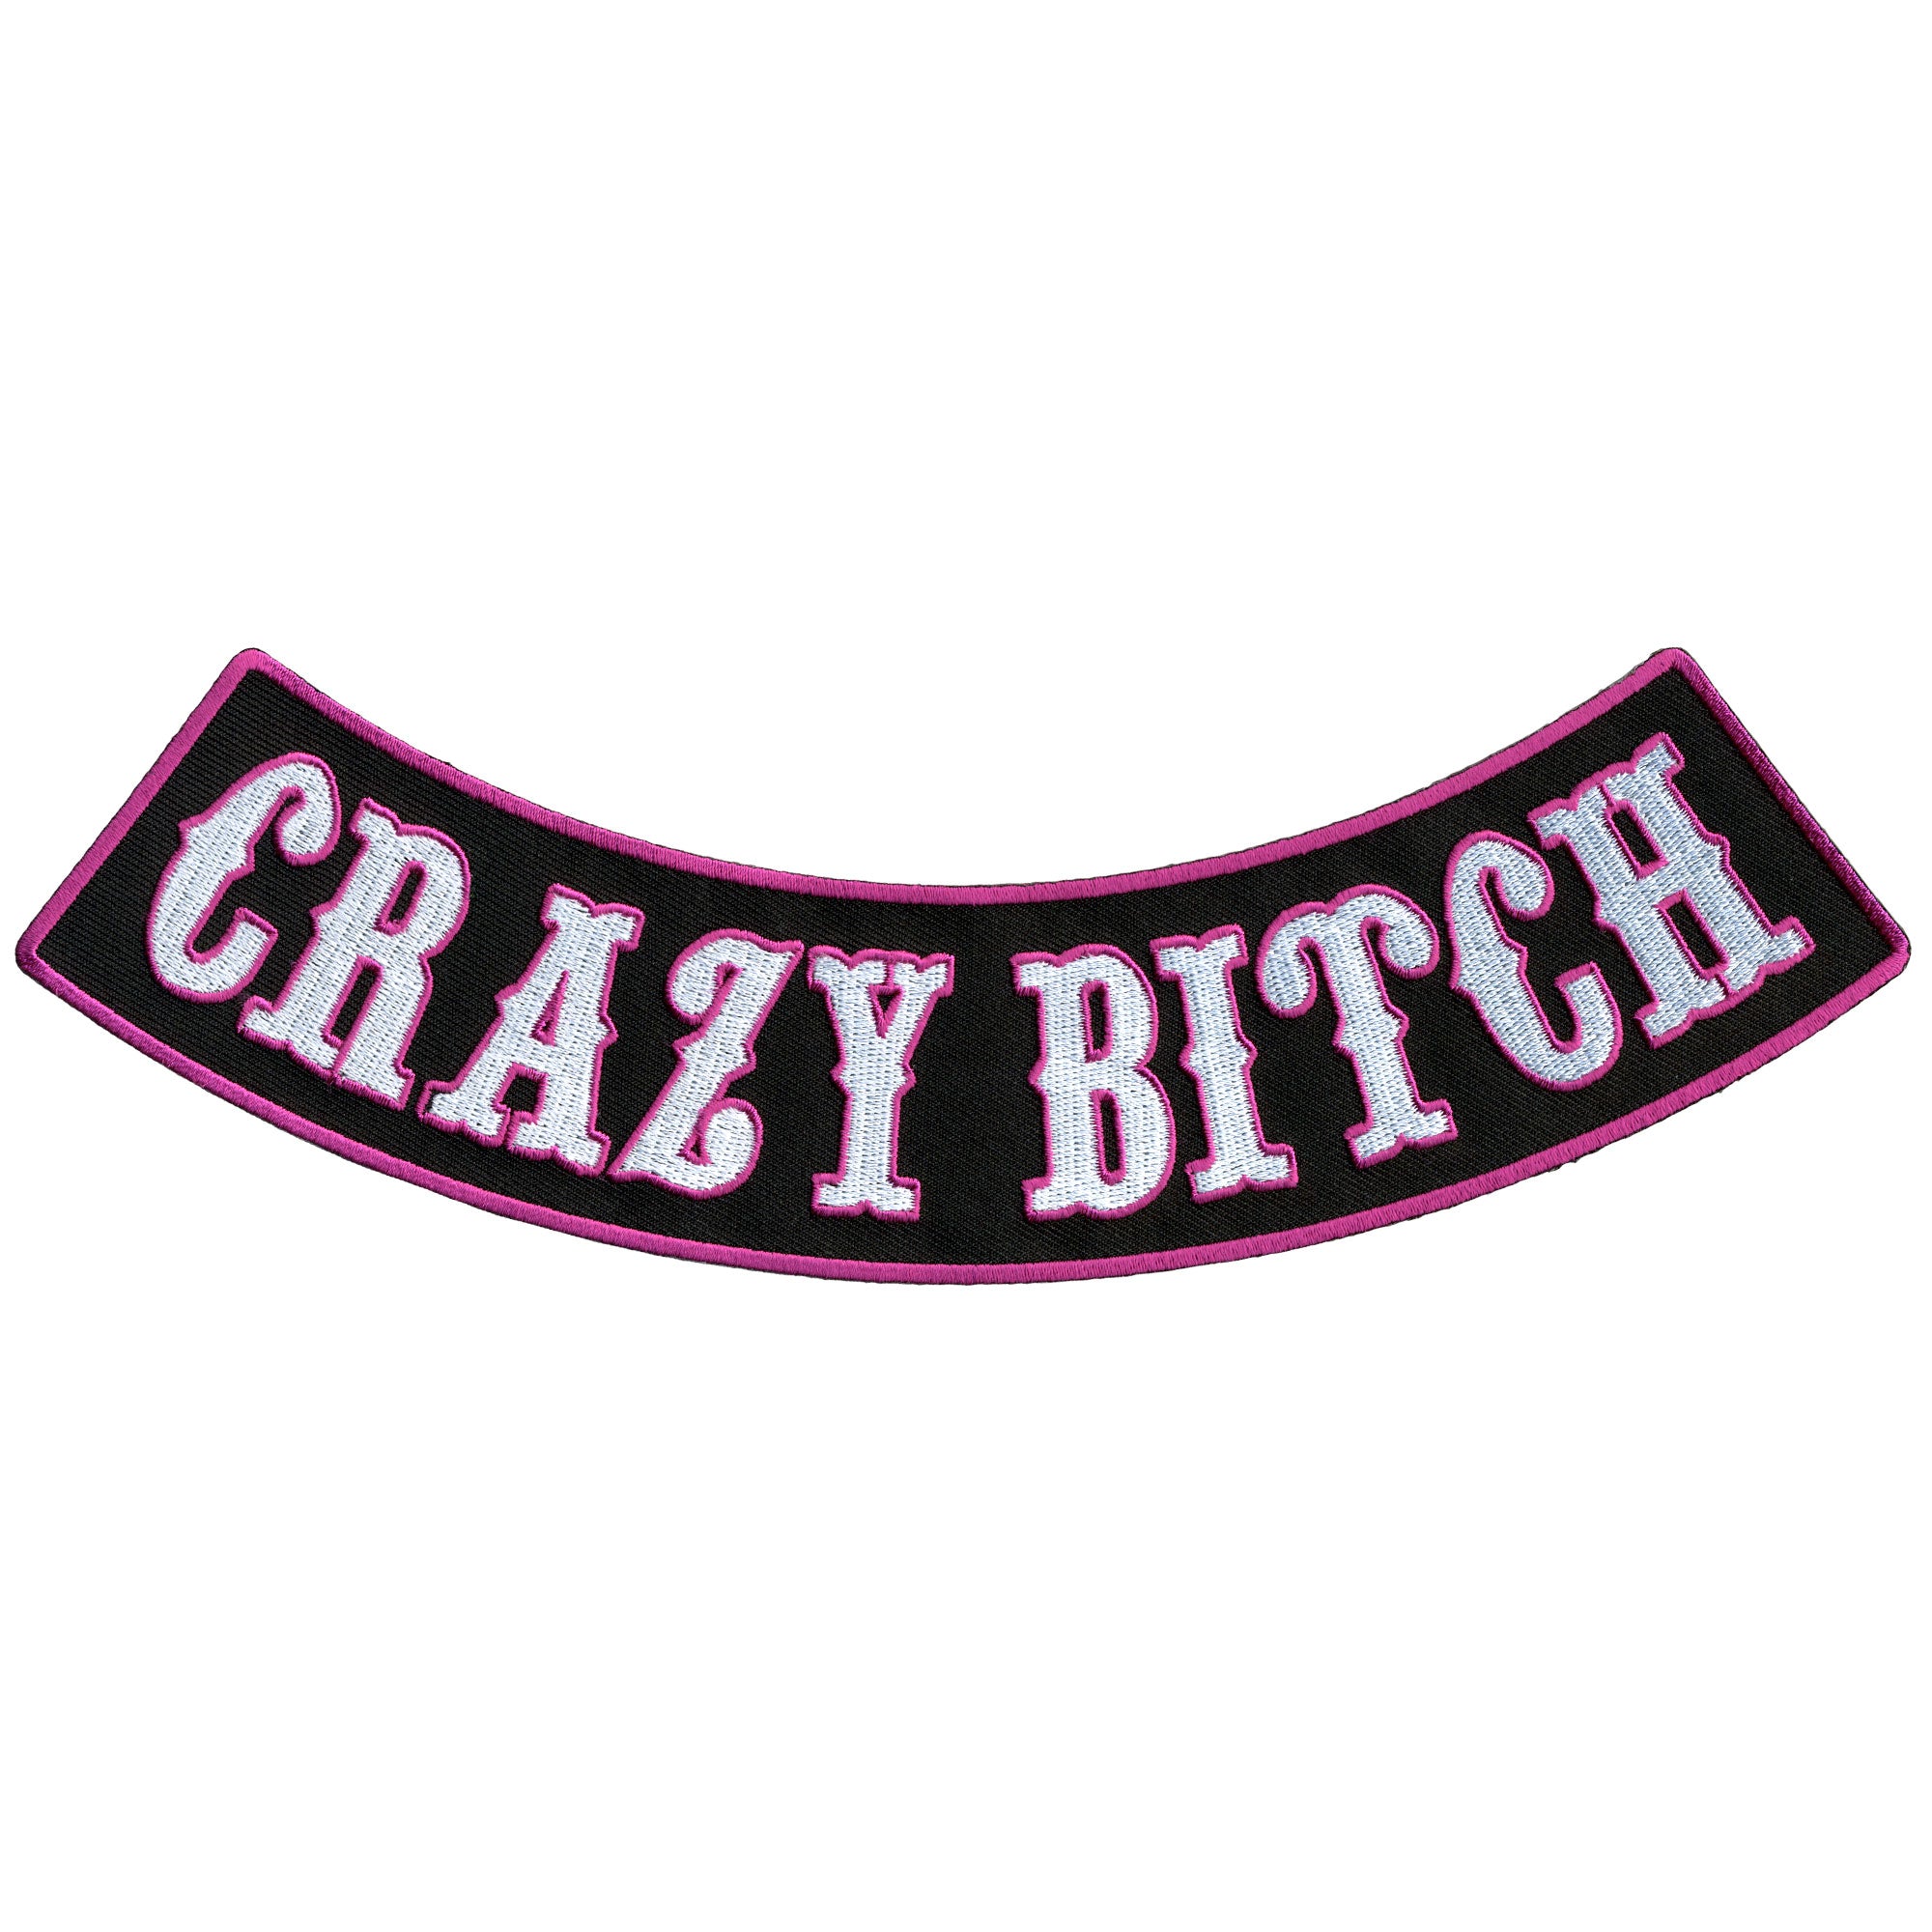 Hot Leathers Crazy Bitch 10” X 2” Bottom Rocker Patch